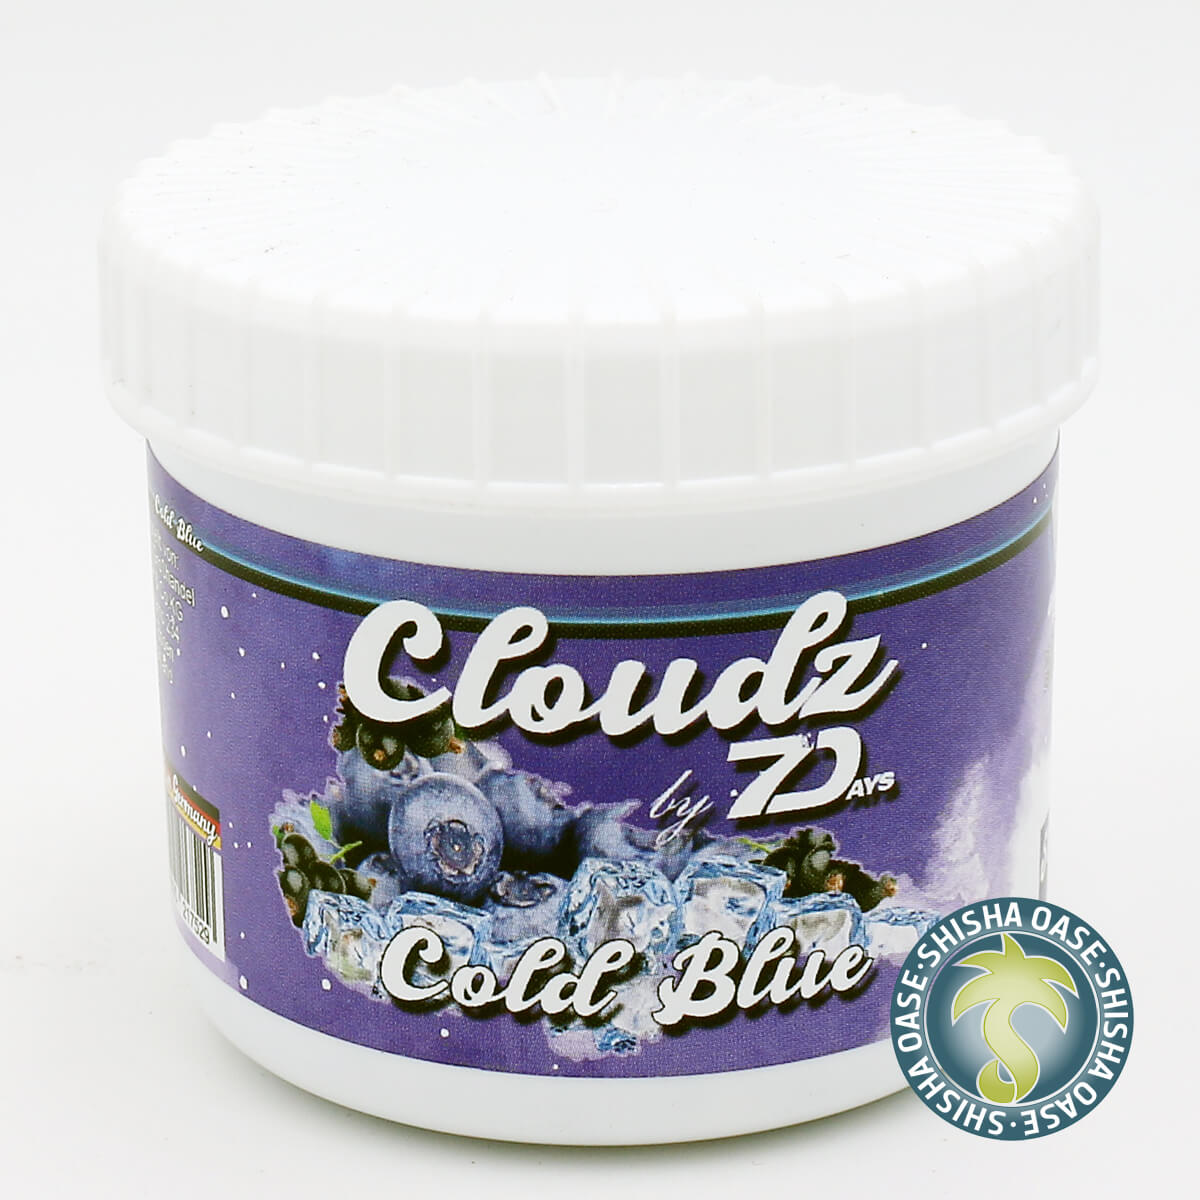 Cloudz by 7 Days Dampfsteine 50g | Cold Blue